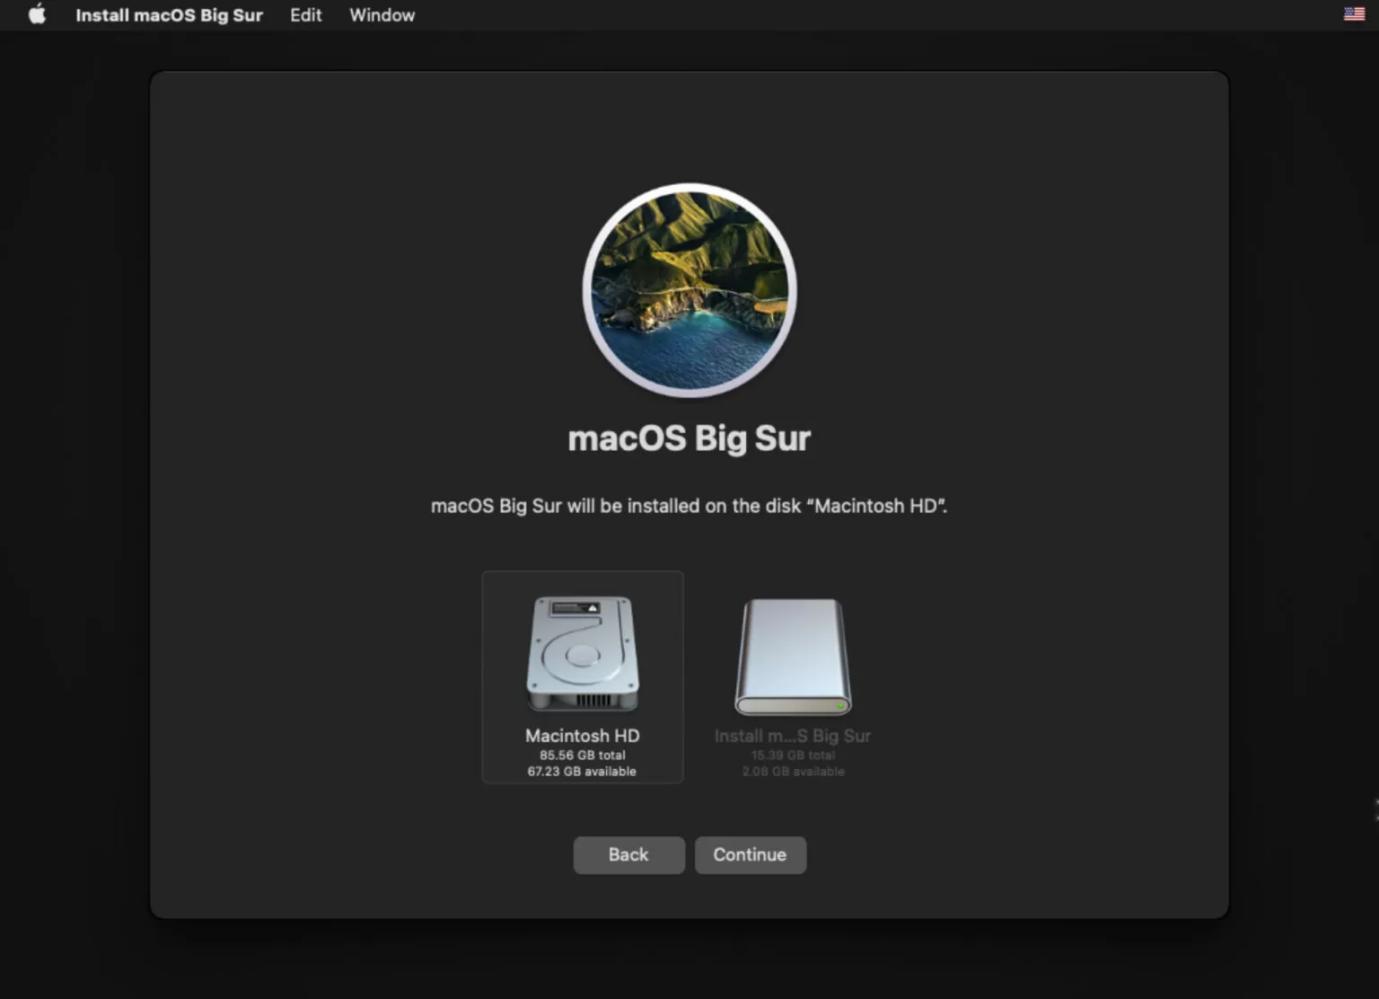 réinstaller Macos étape 3 | Pas de disque de démarrage sur Mac